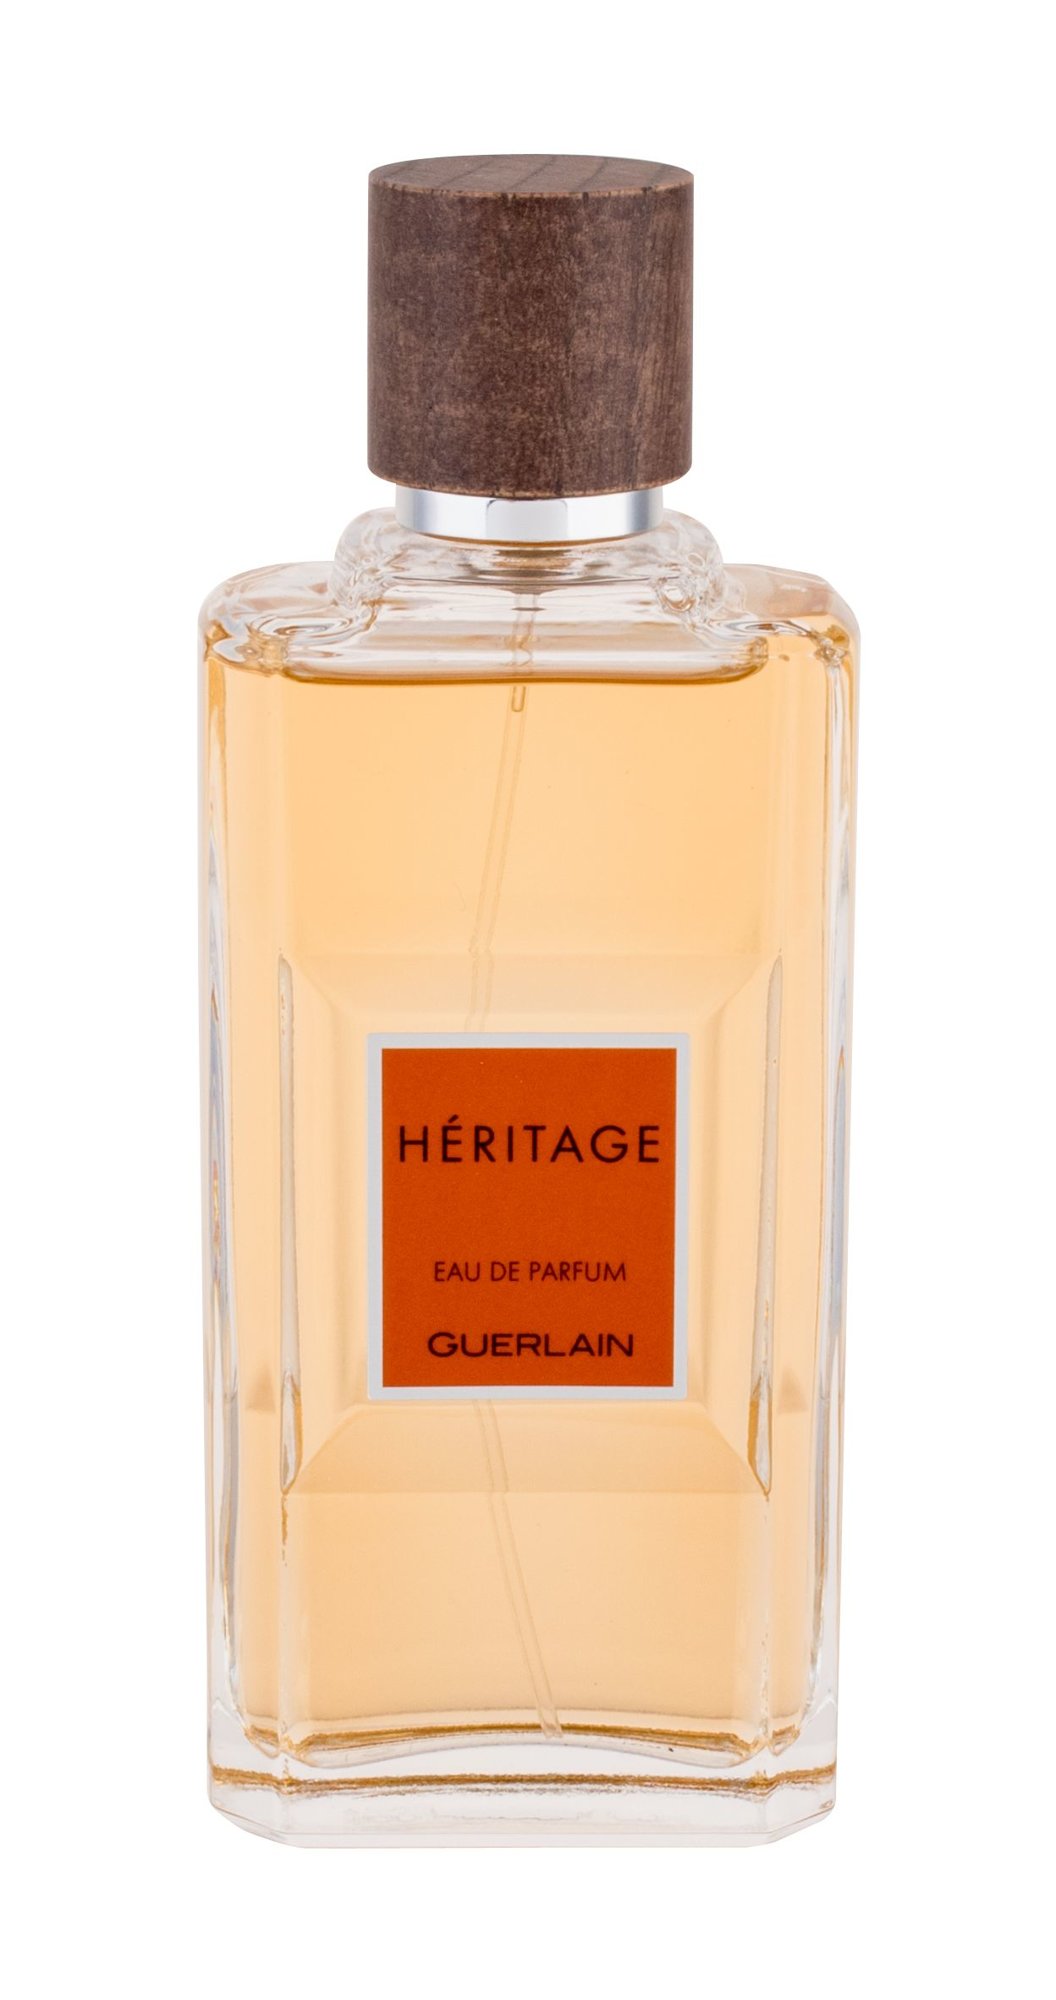 Guerlain Heritage kvepalų mėginukas (atomaizeris) Vyrams